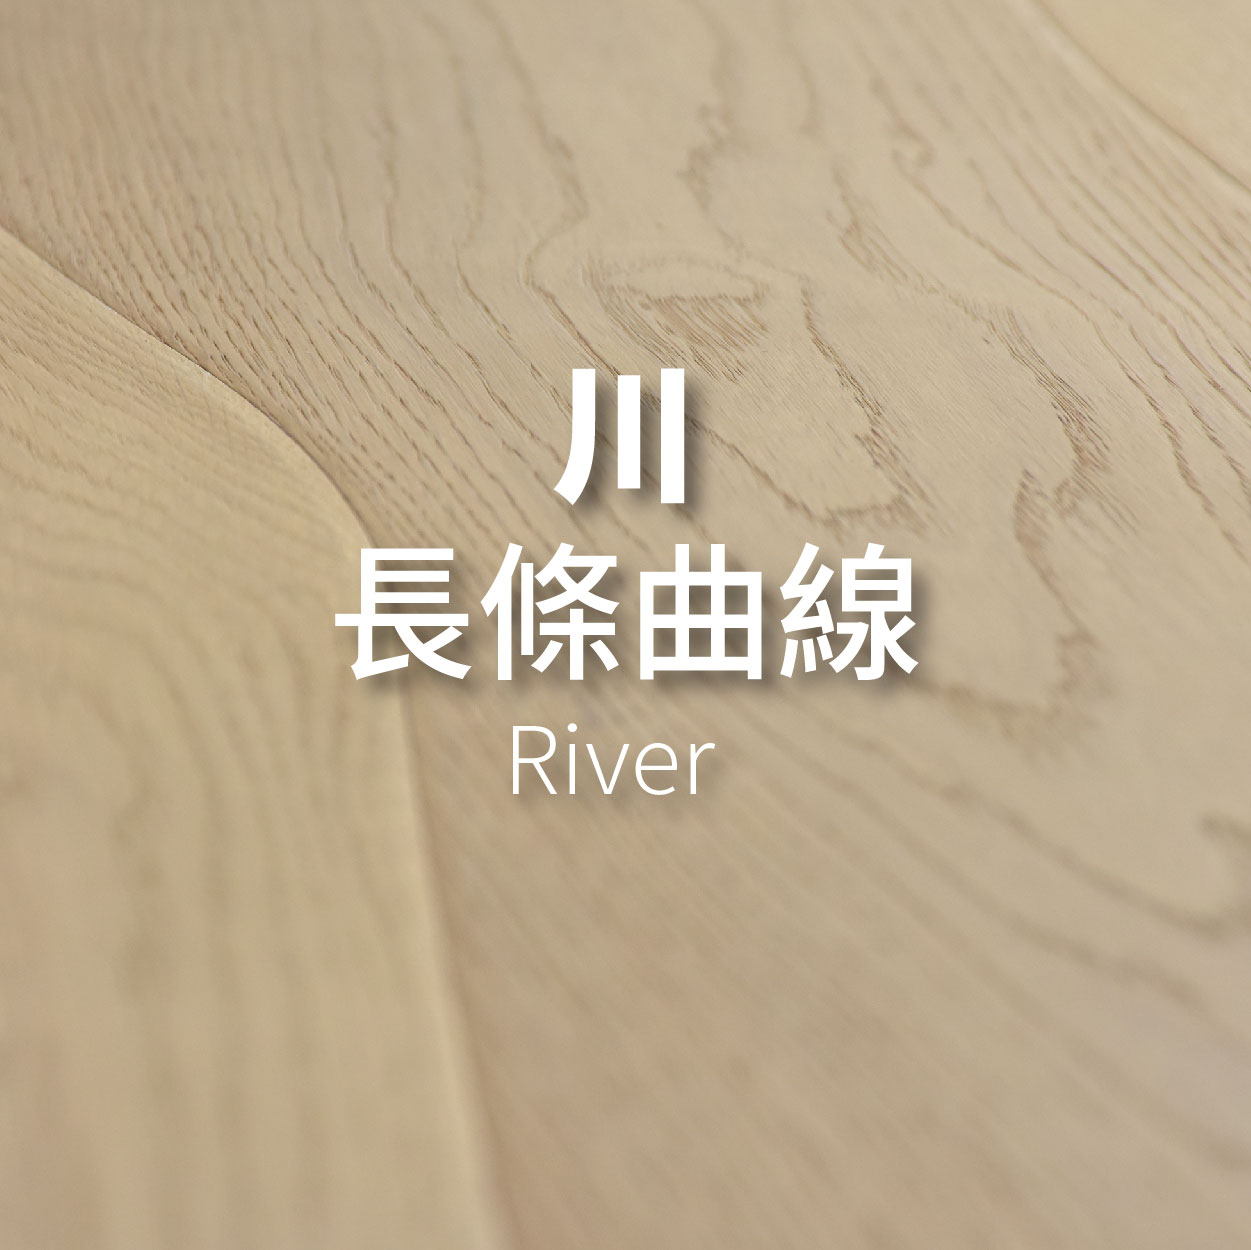 川 | 長條曲線 <p>River</p>